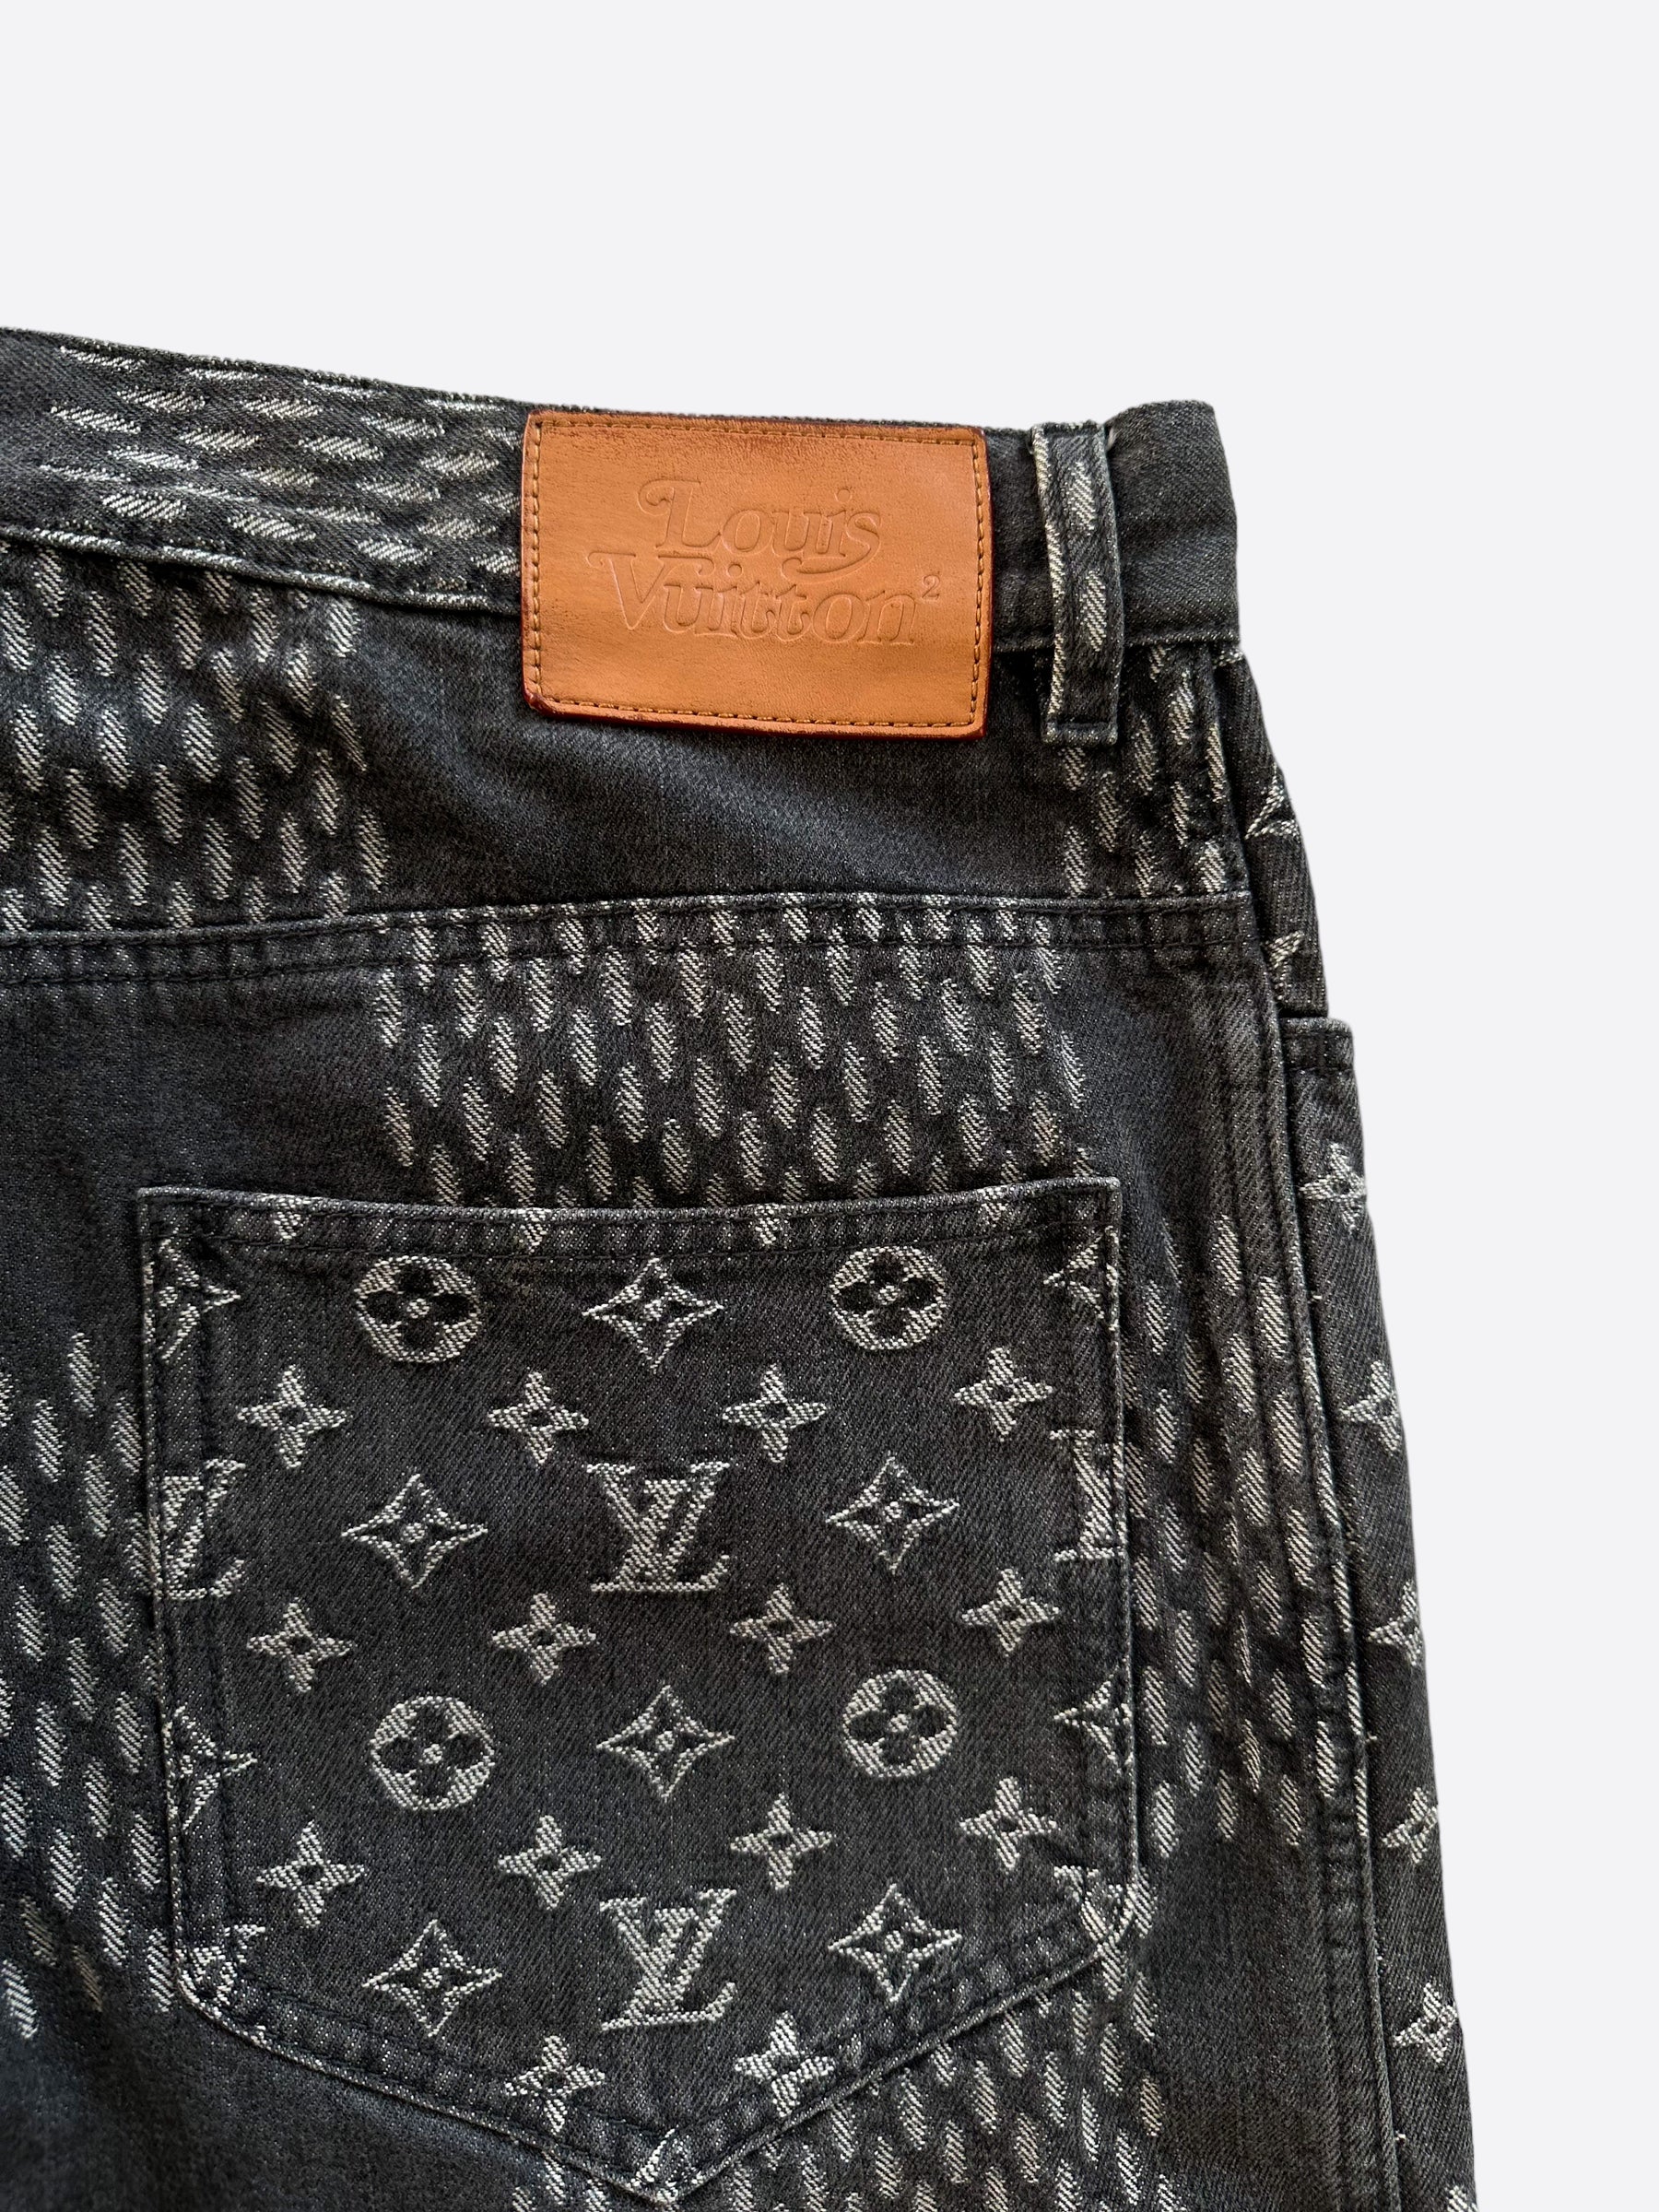 Louis Vuitton Nigo Grey Giant Damier Monogram Jeans